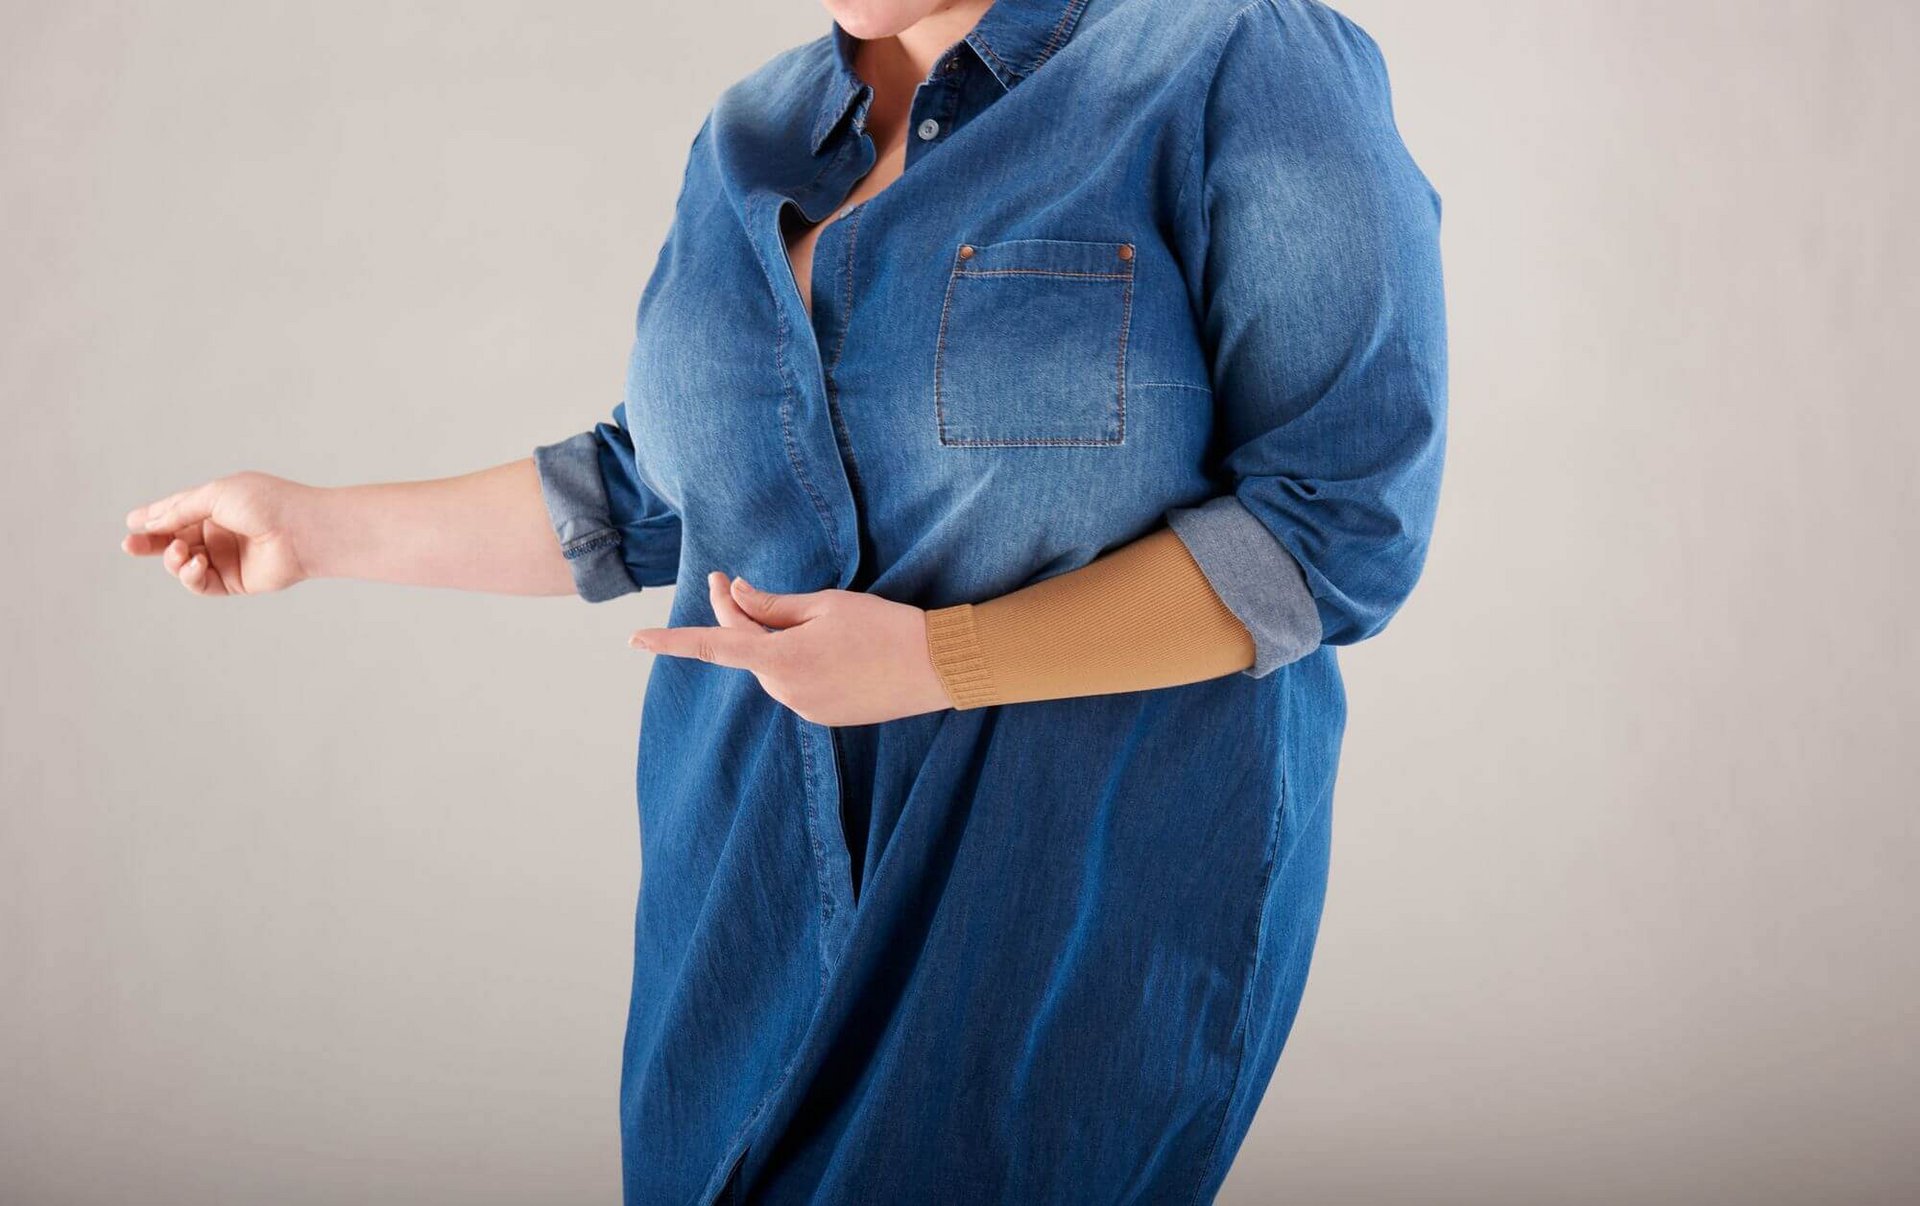 Bildausschnitt einer Frau mit Jeanshemd und curaflow-Flachstrick Kompression von Bauerfeind am linken Arm.